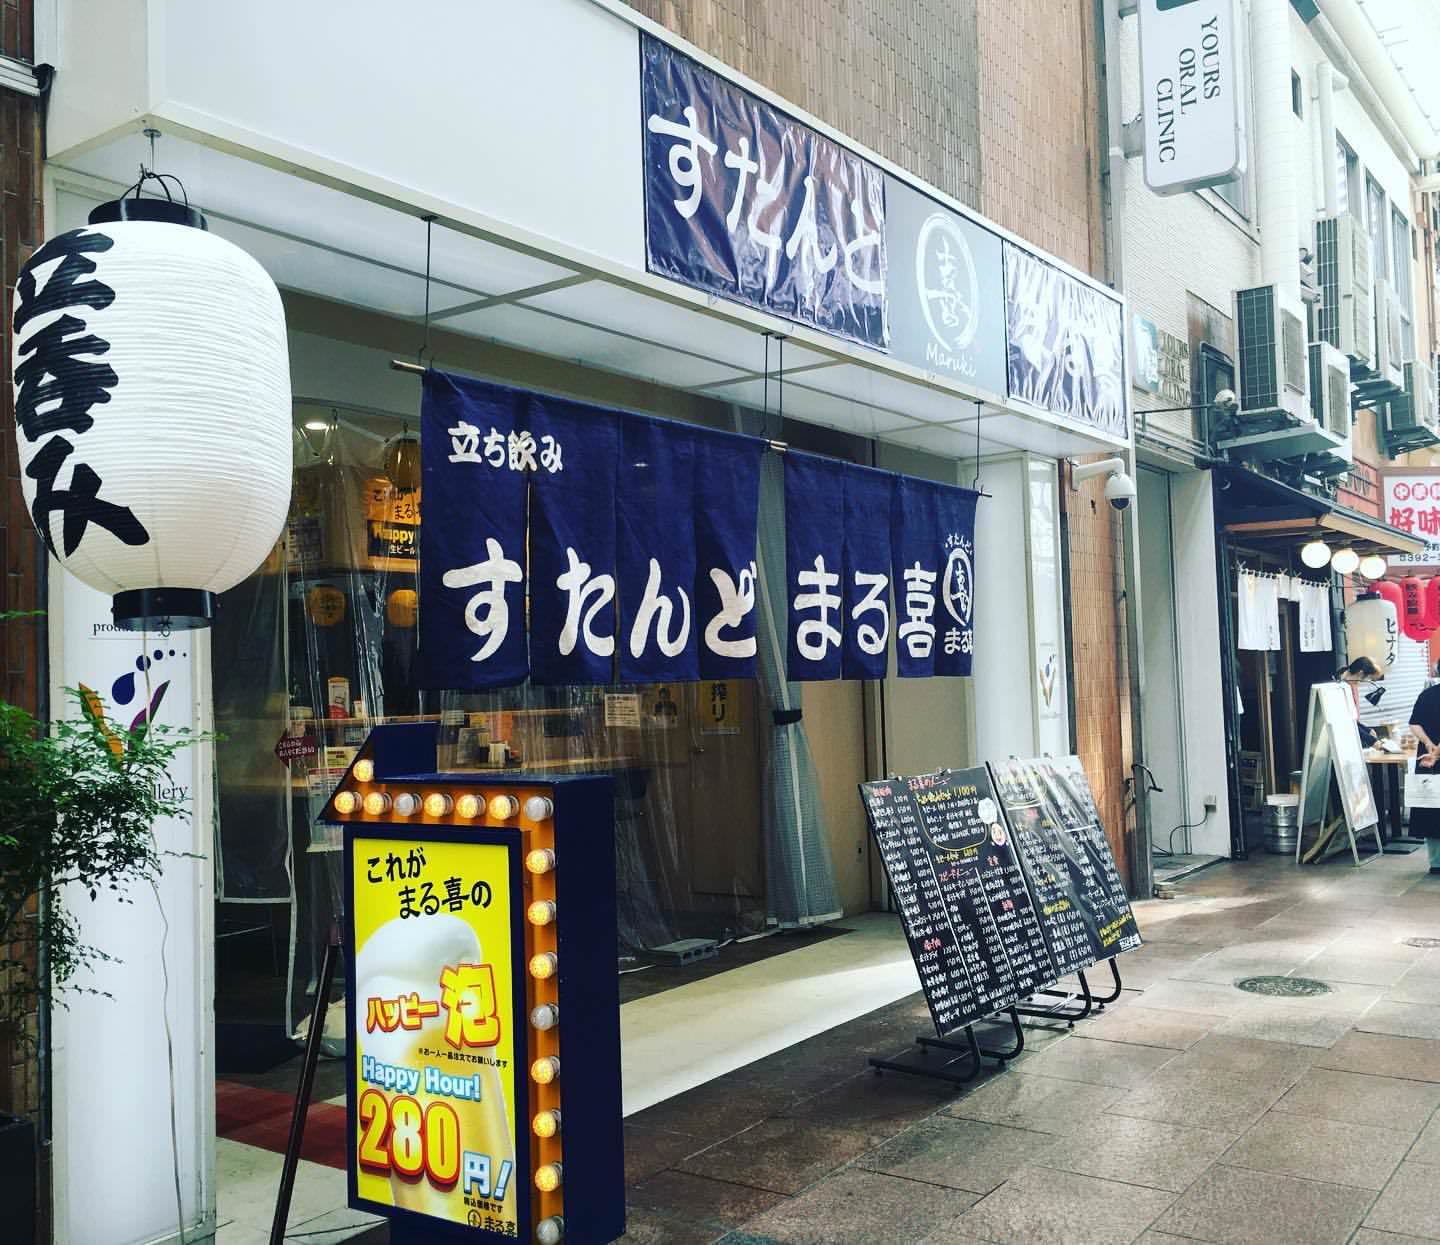 ELOISE’s Cafe横浜ハンマーヘッド店がUber Eatsにてご注文いただけるようになりました。